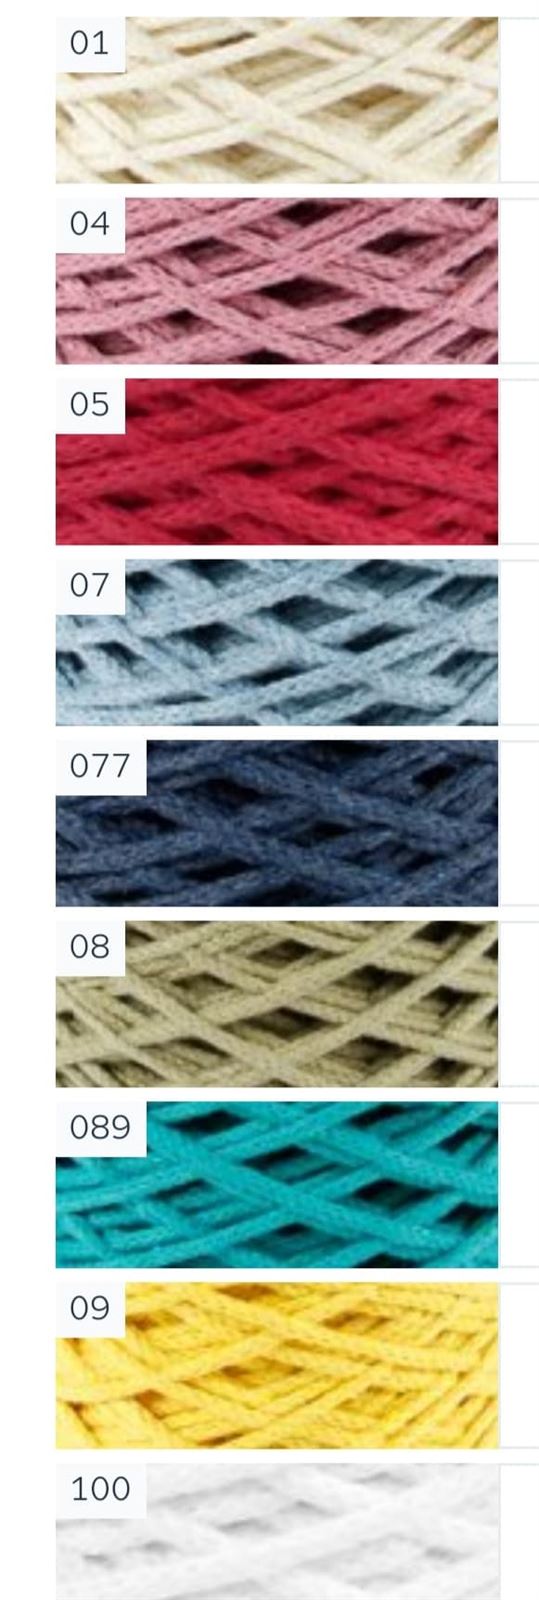 DMC Nova Vita 4 Crochet, Tricot, Macrame - Imagen 2